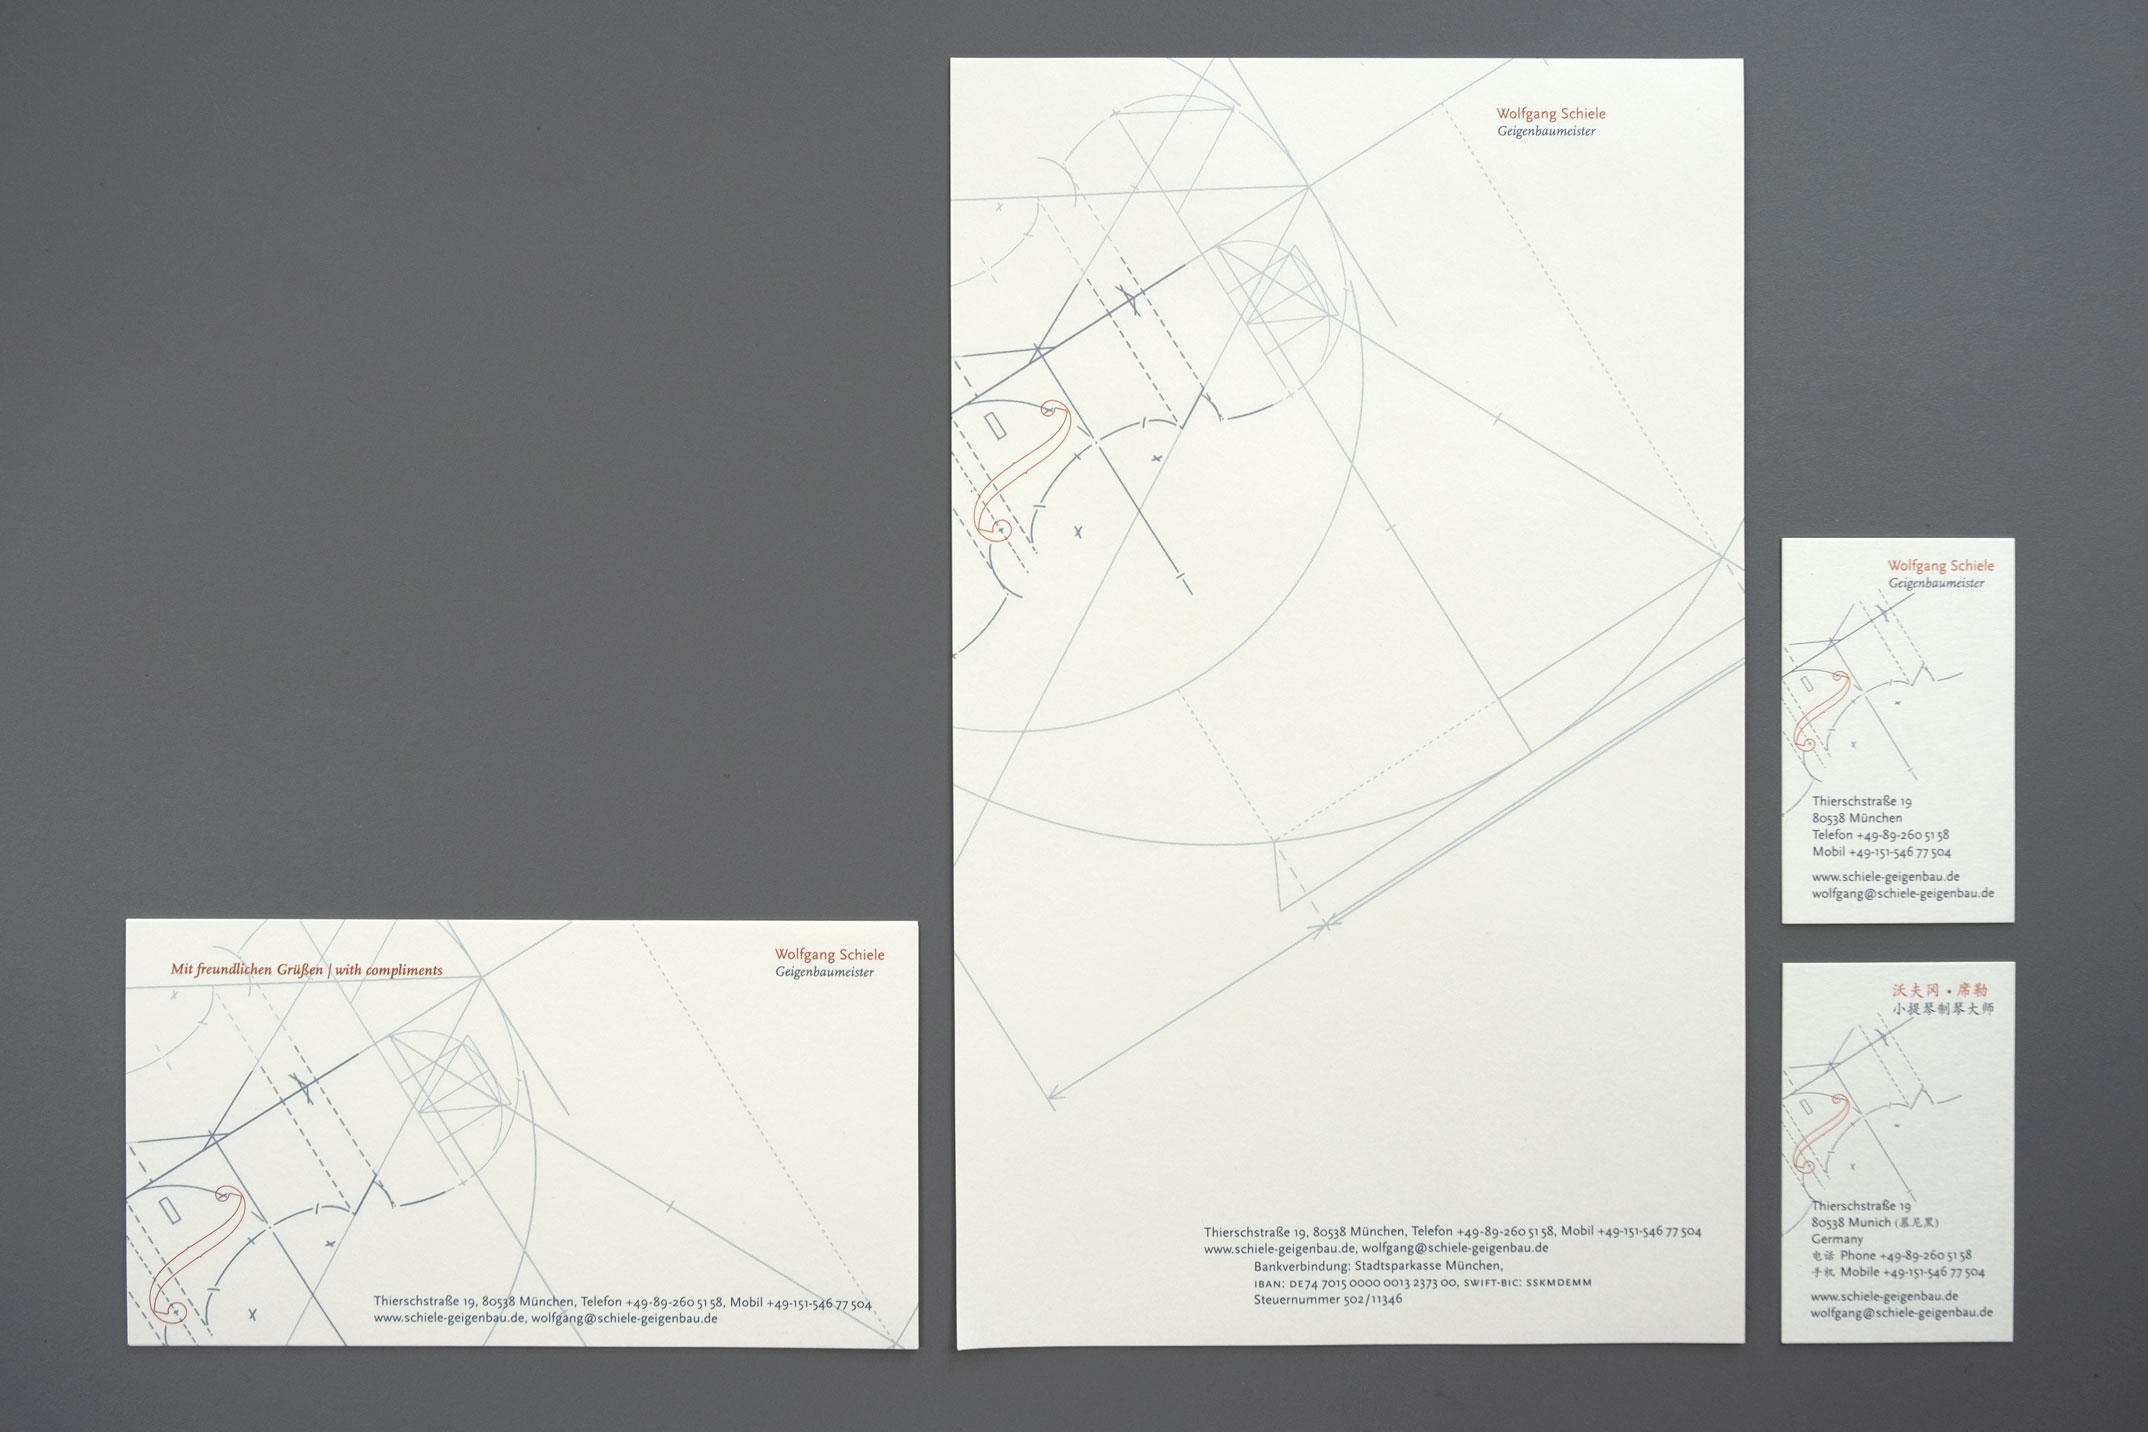 Briefausstattung mit Briefpapier, Visitenkarten und Kurzmitteilung – Corporate Design Wolfgang Schiele Geigenbaumeister